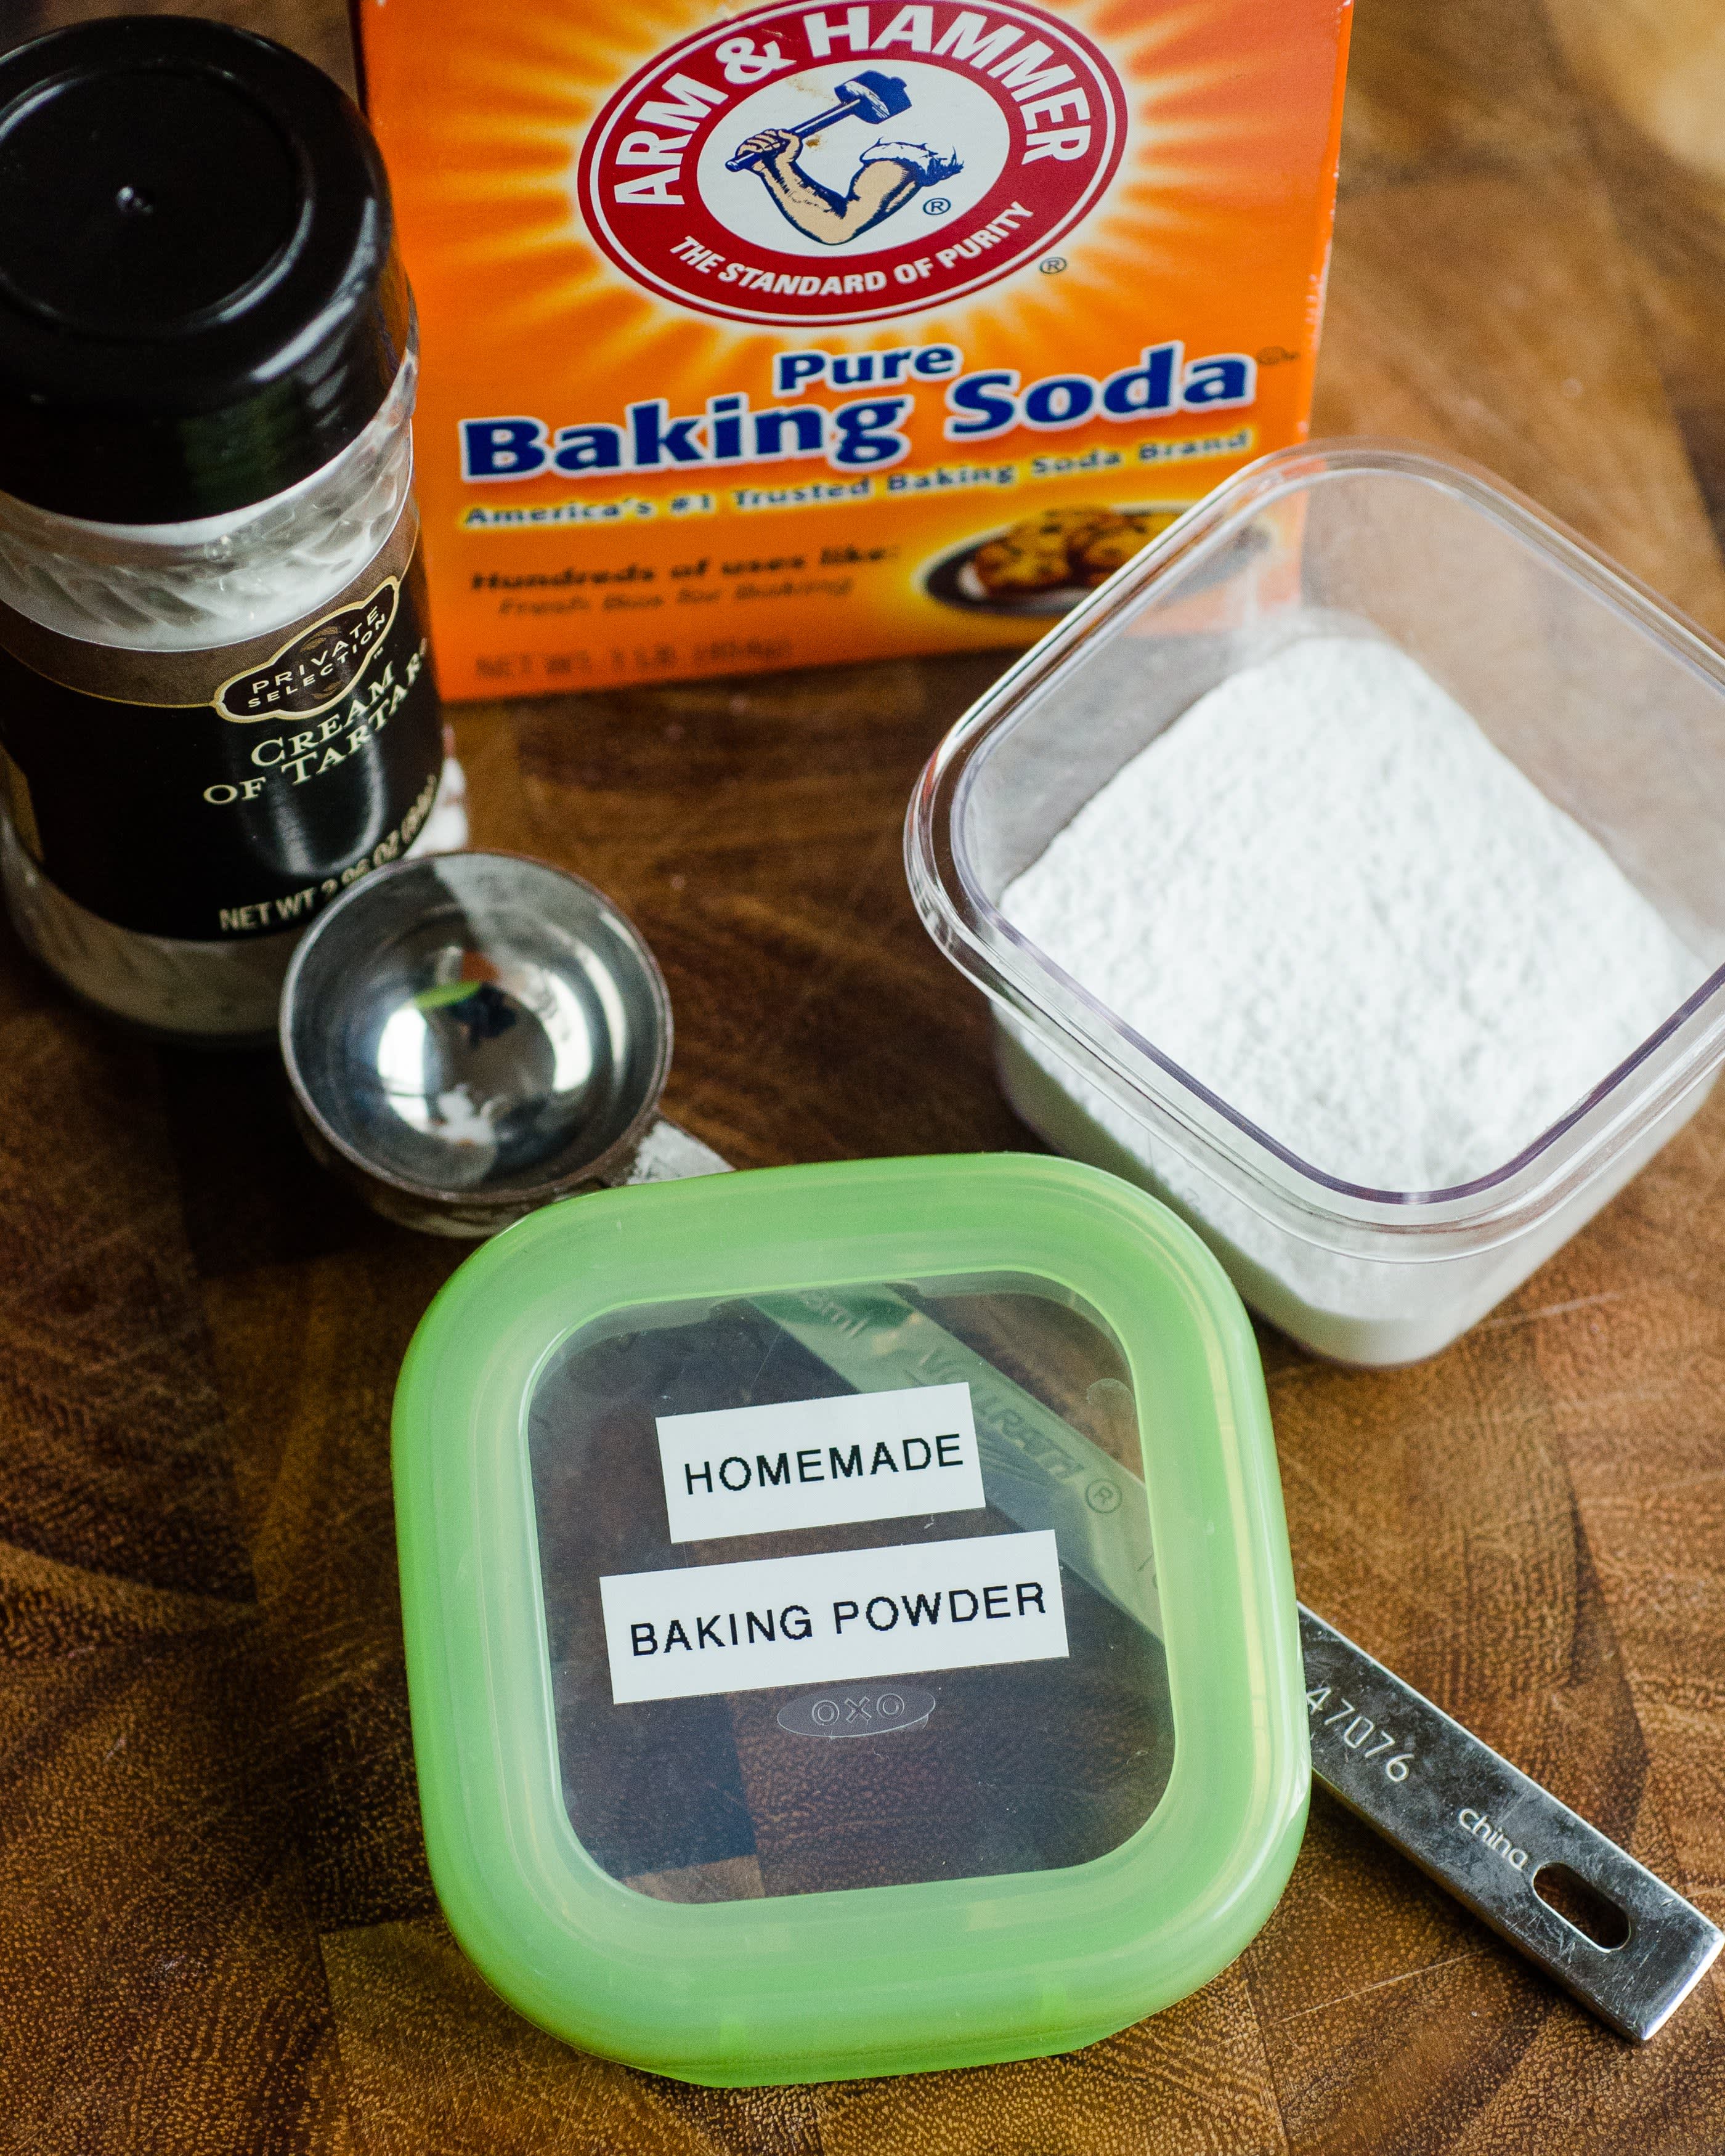 Baked Baking Soda (Sodium Carbonate) Recipe